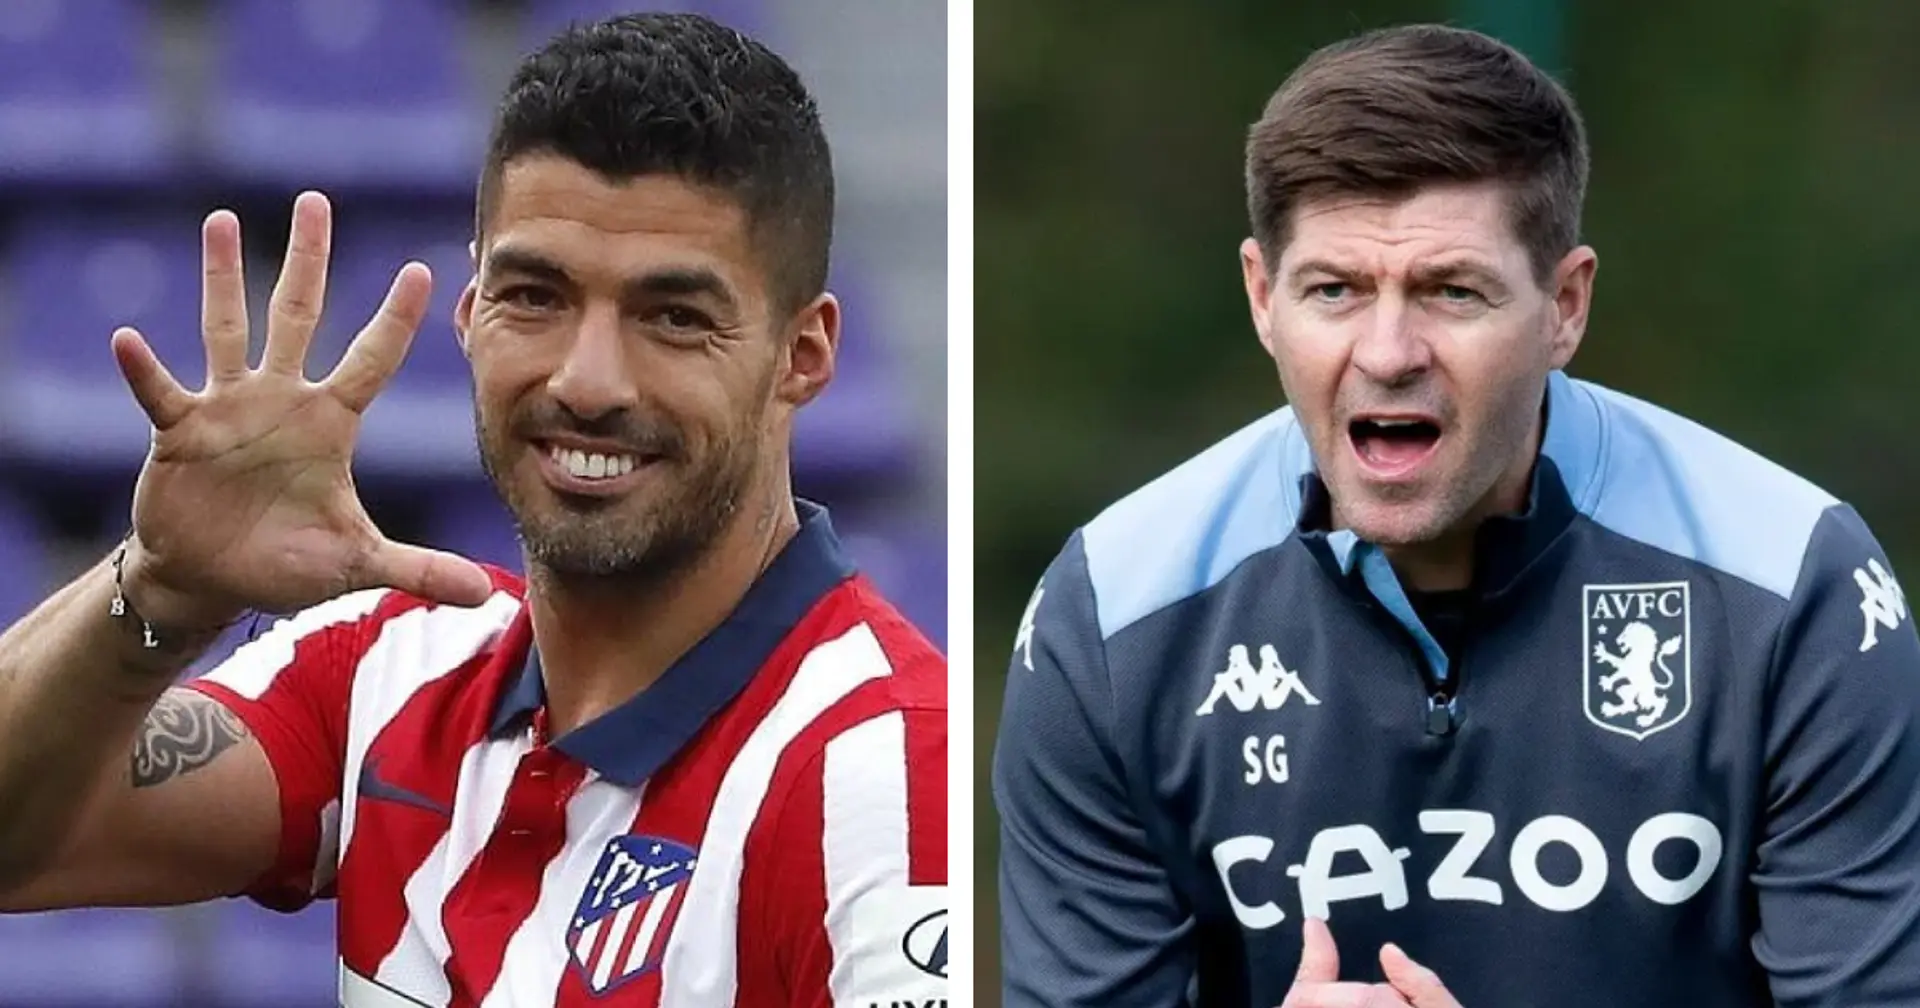 Luis Suarez wird mit einem Wechsel zu Aston Villa in Verbindung gebracht - plant Steven Gerrard eine Wiedervereinigung?